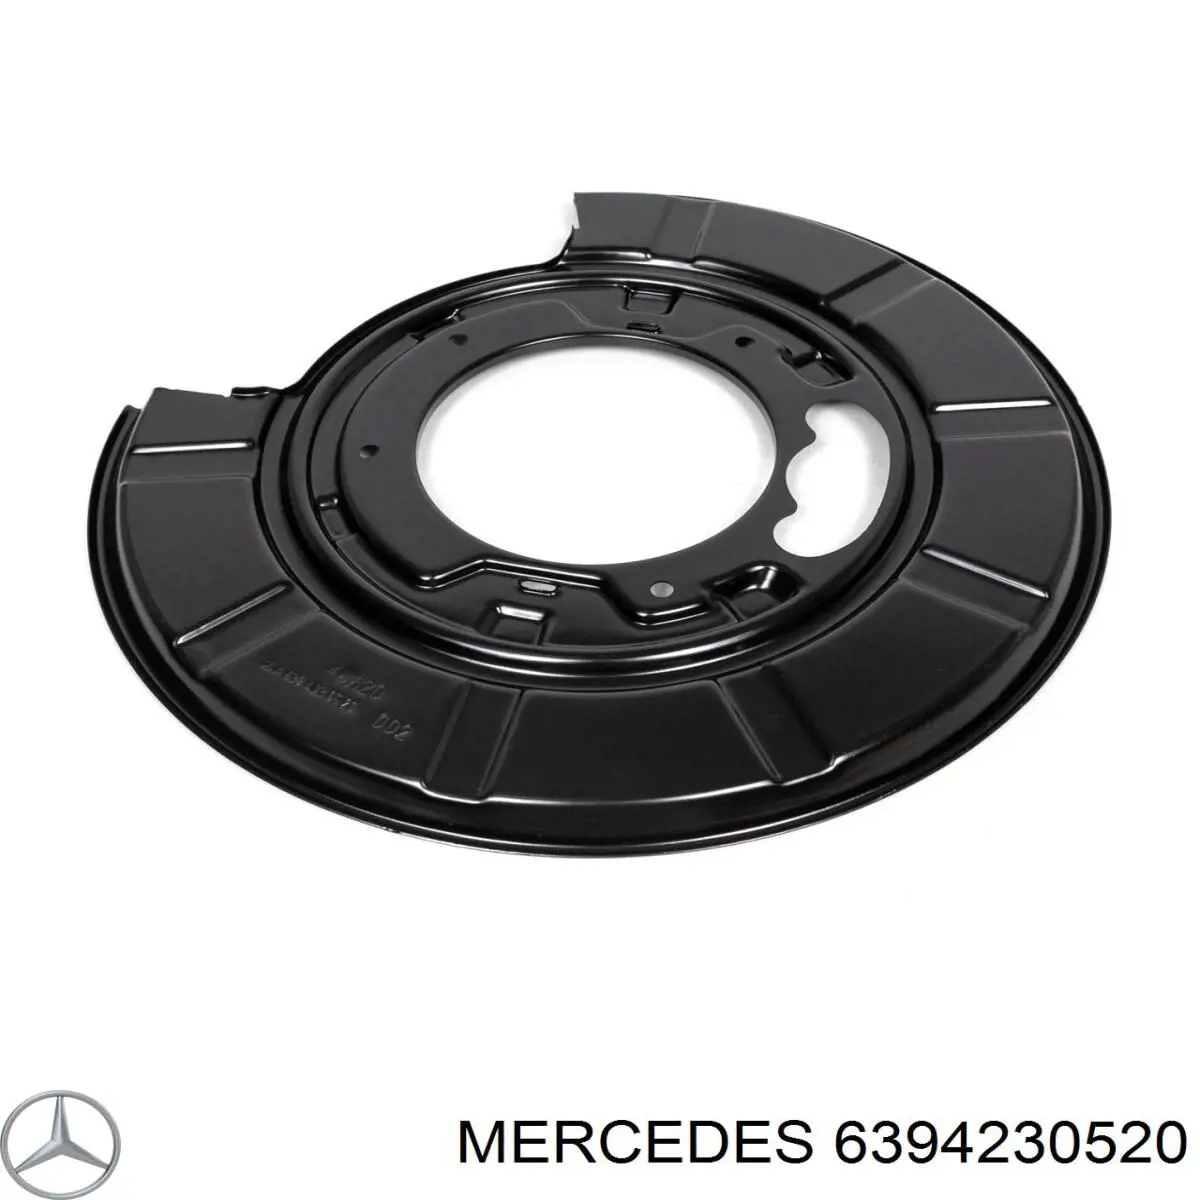 Защита тормозного диска заднего, правая на Mercedes Sprinter (906)